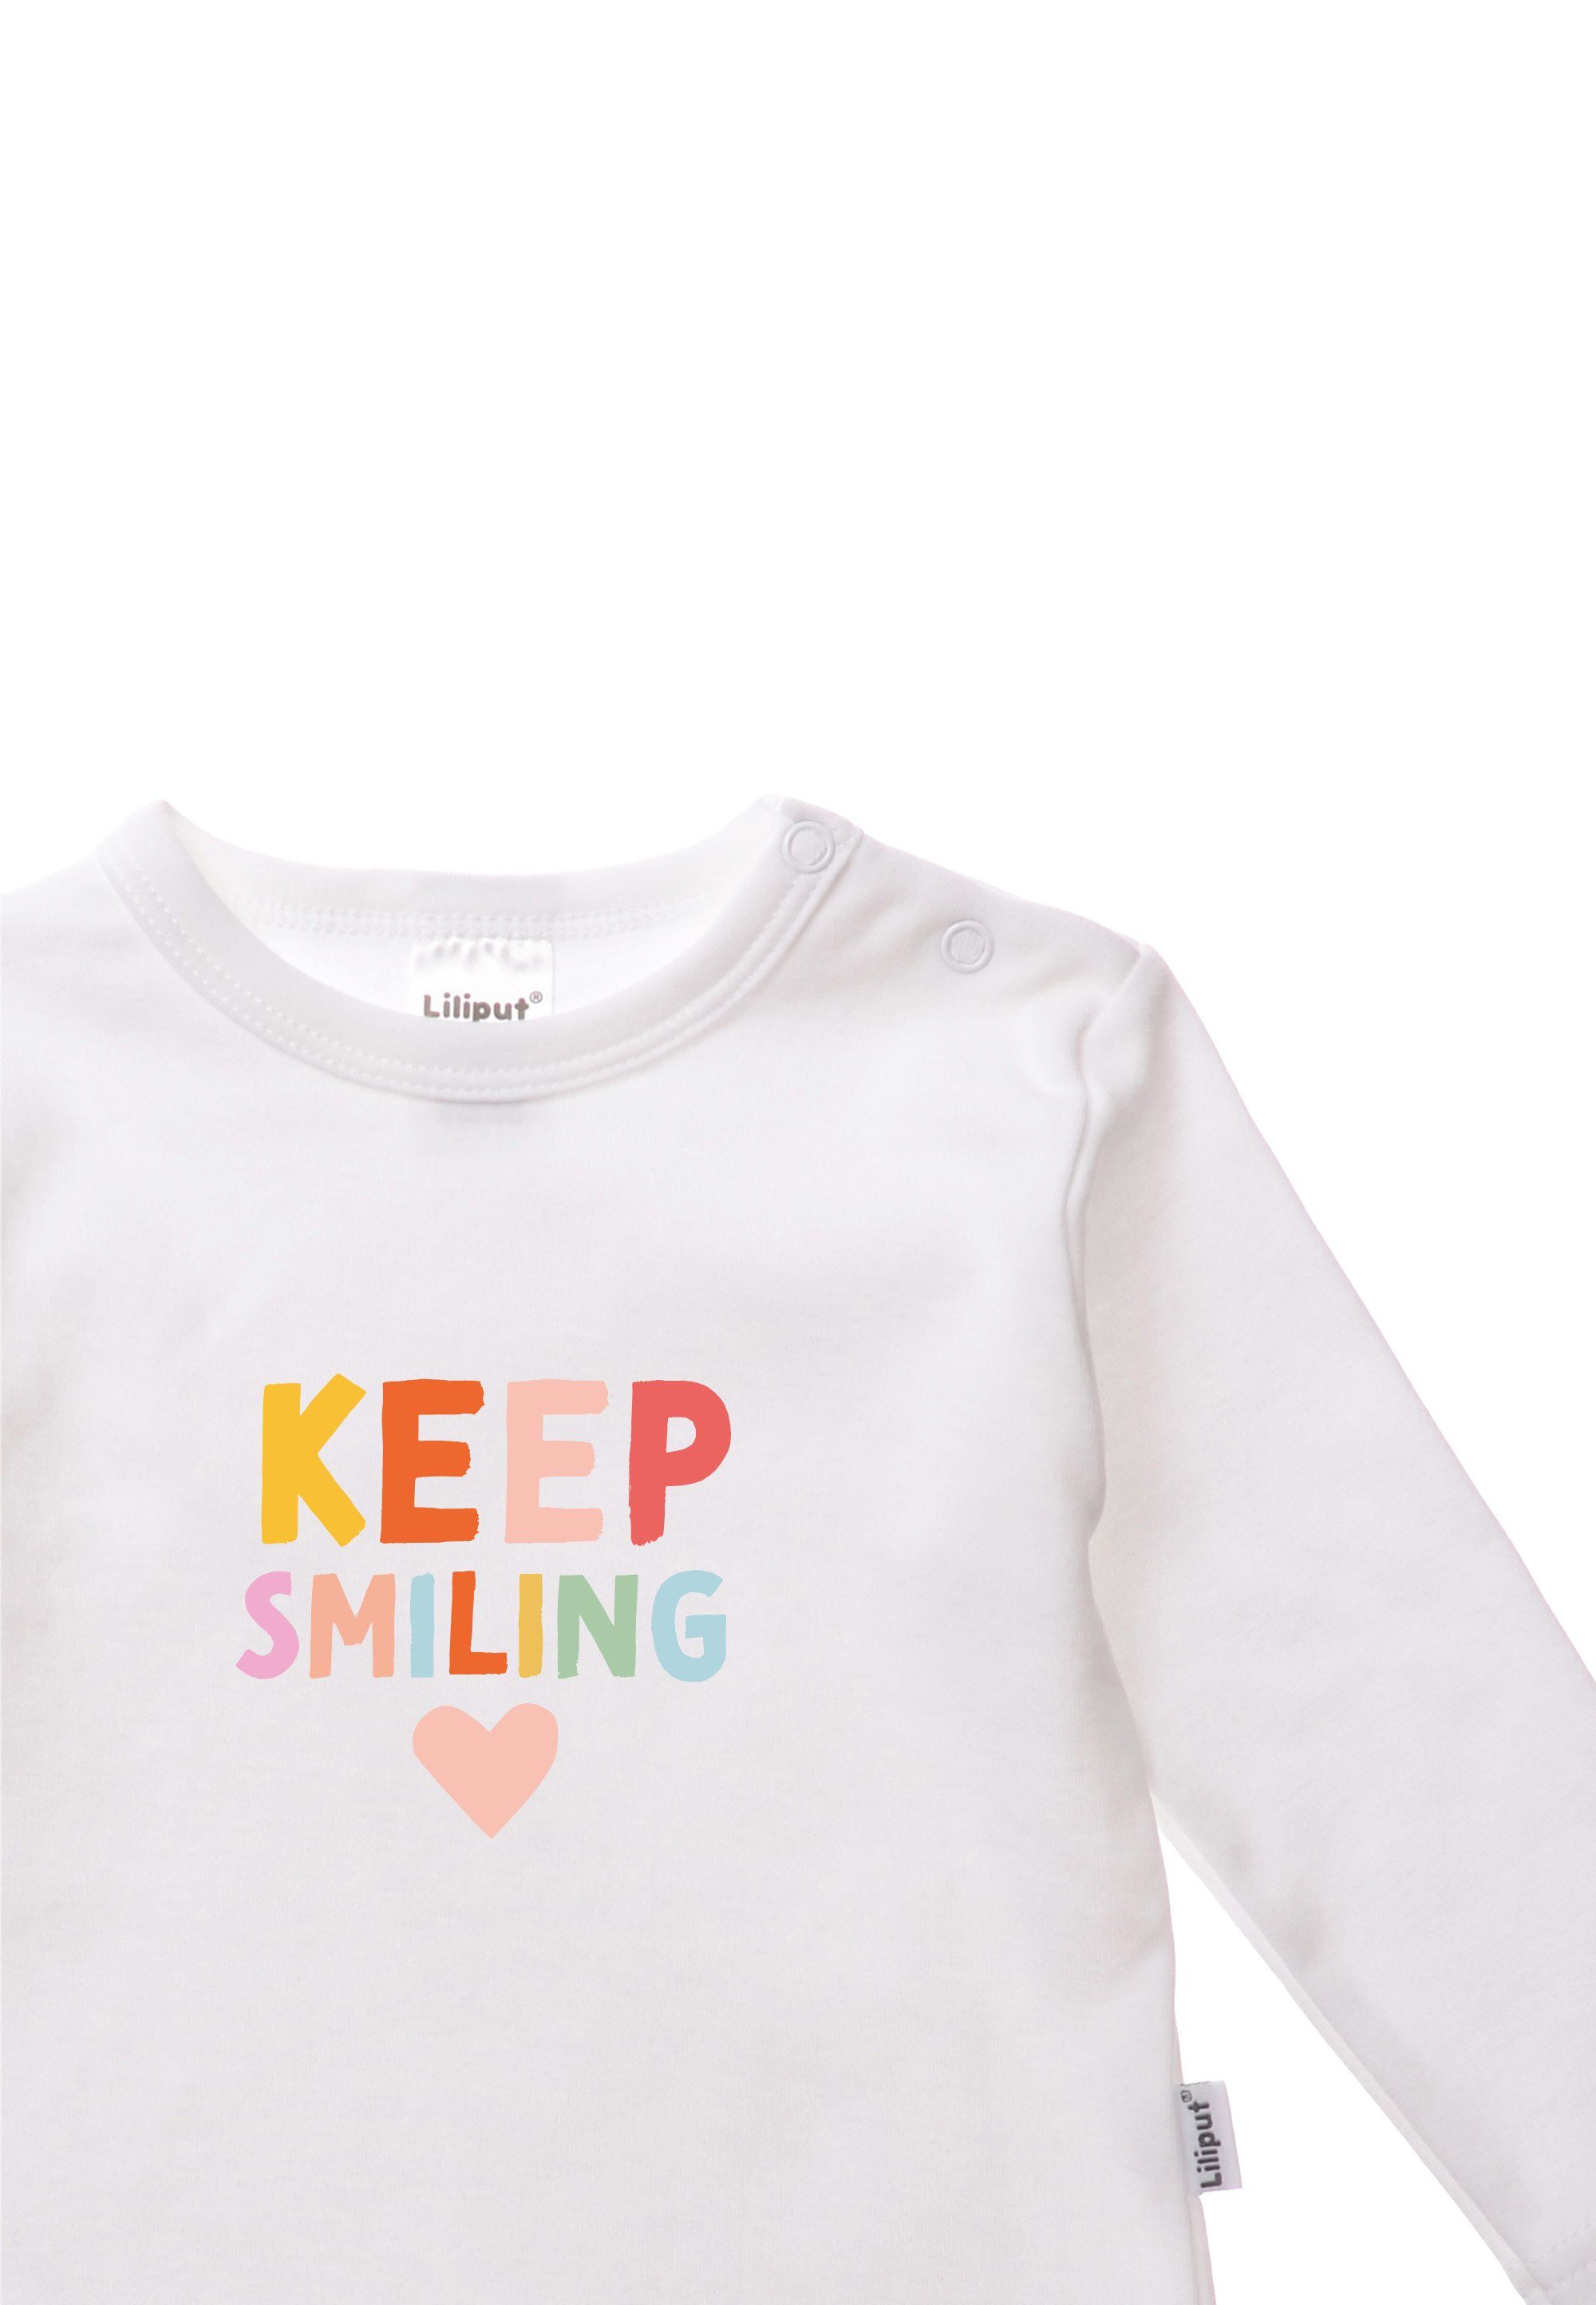 Rundhalsausschnitt Smiling Keep Liliput mit T-Shirt